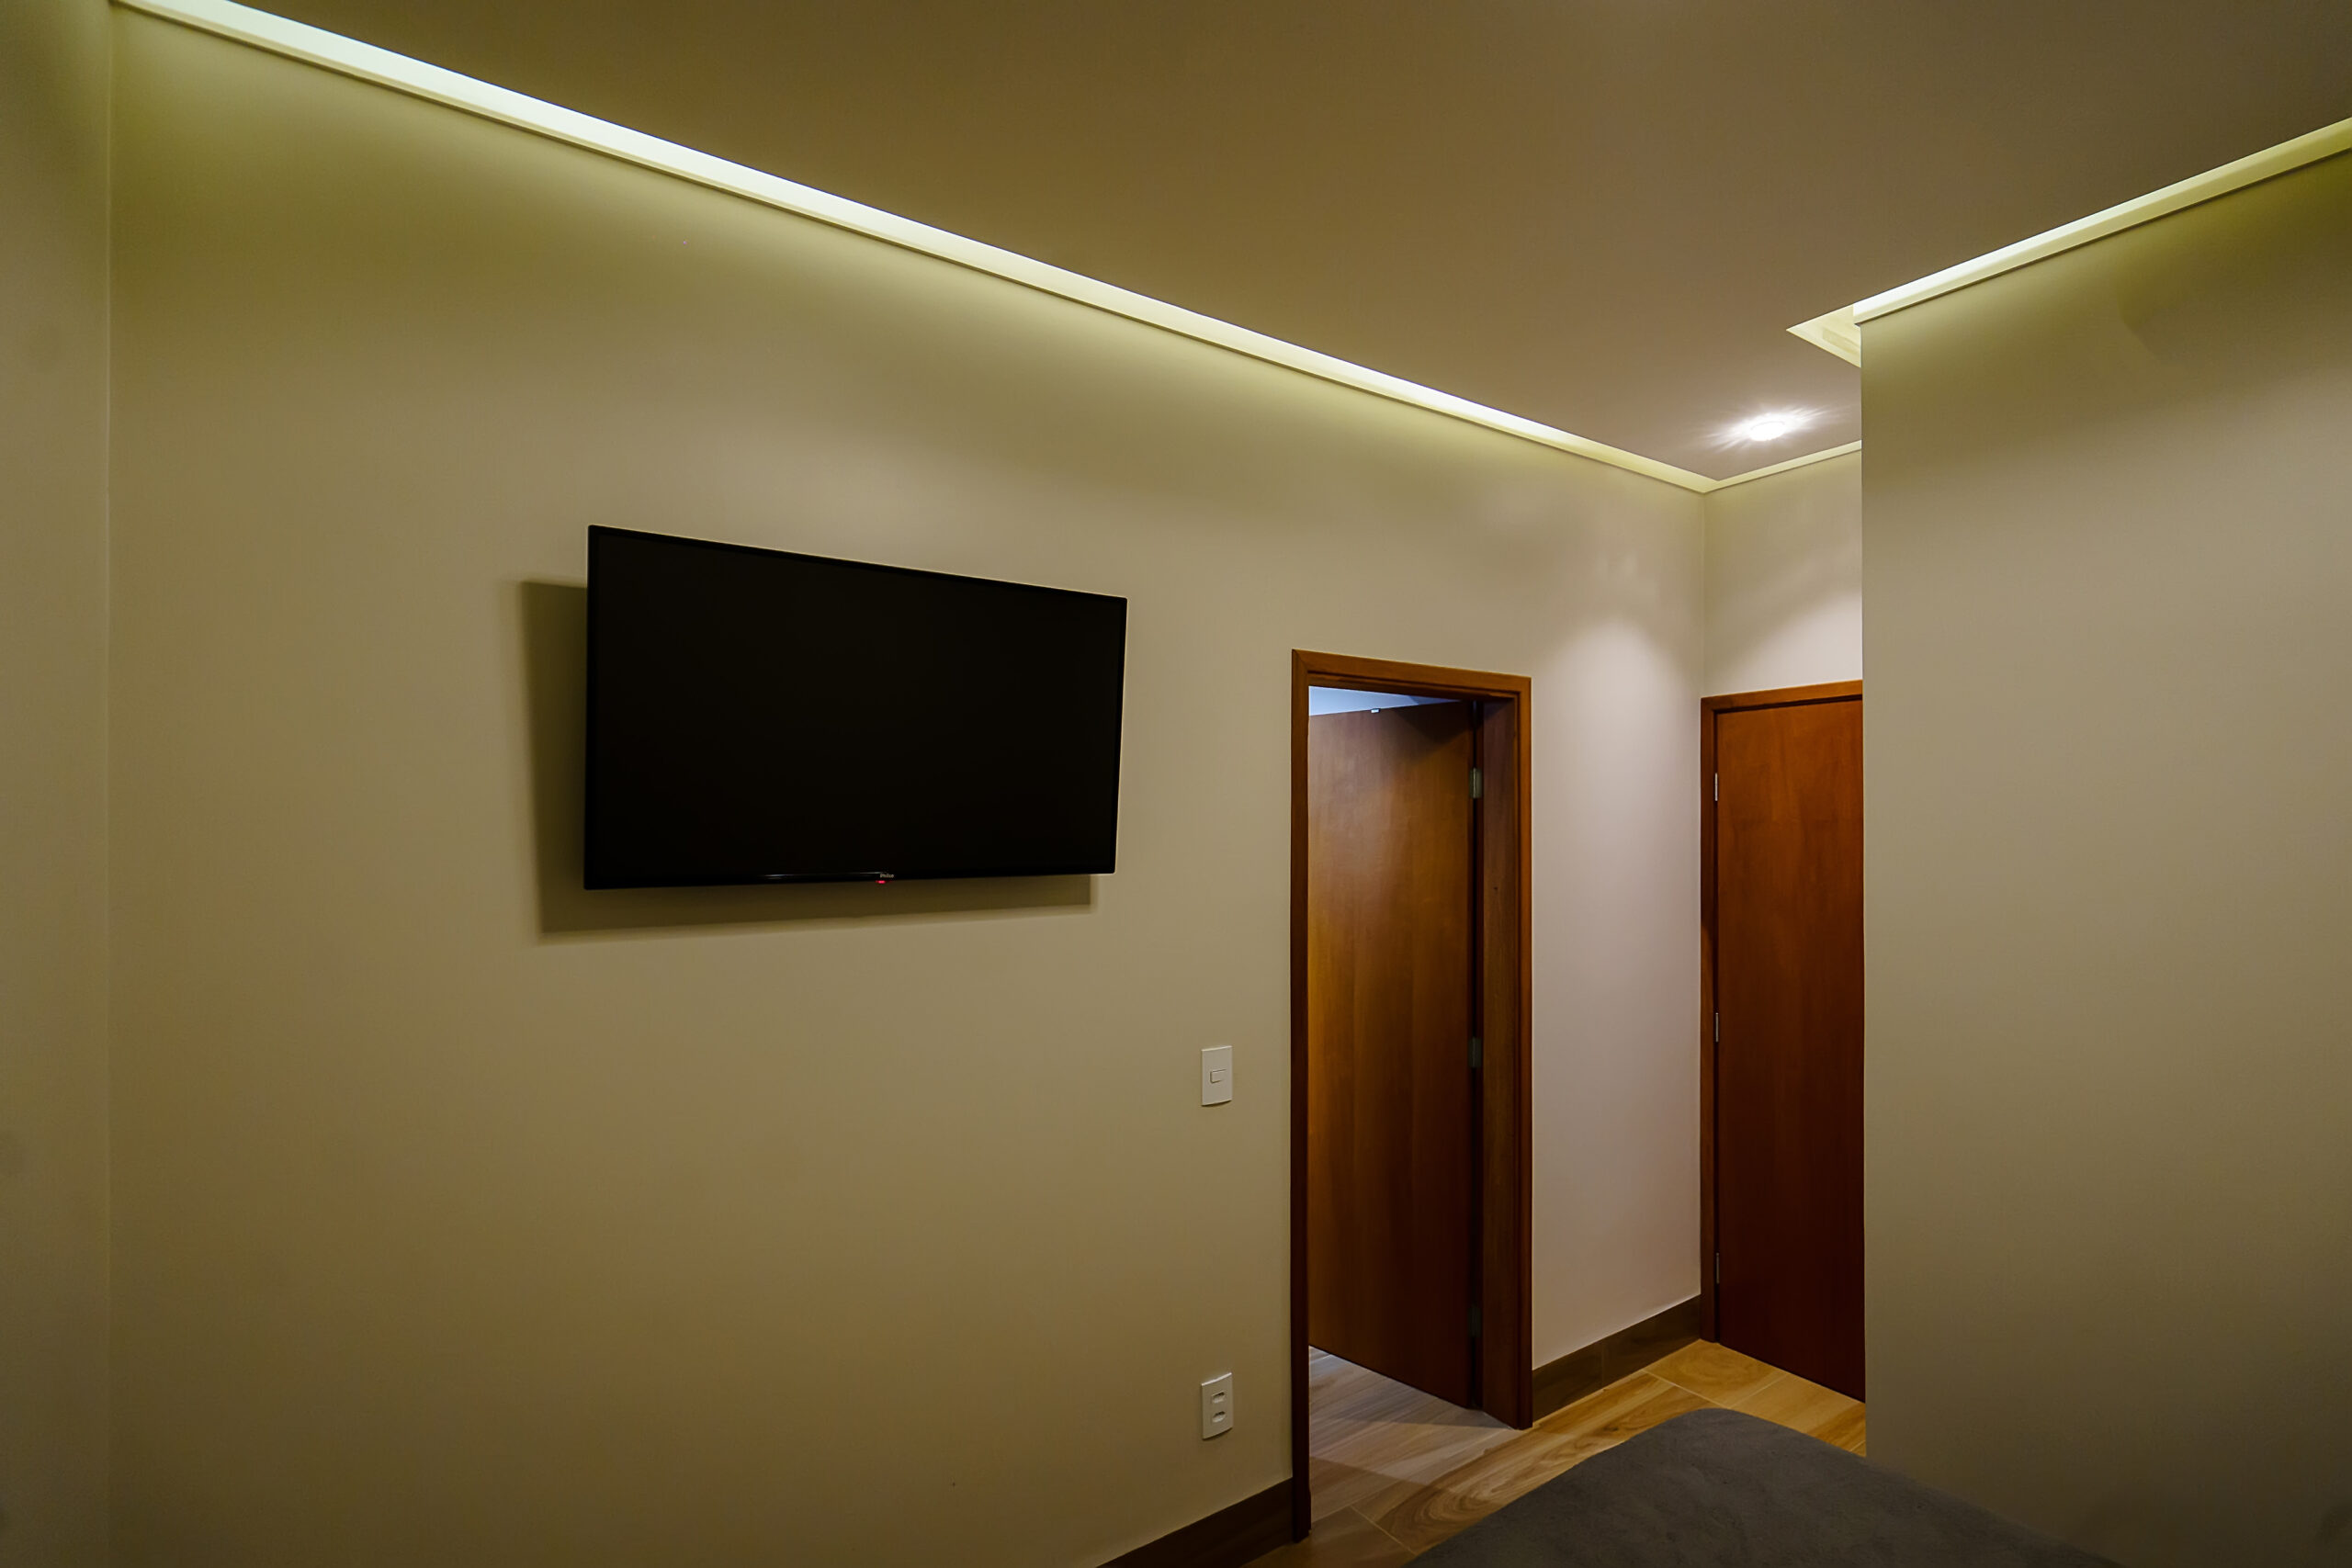 projeto de iluminação residencial, dormitórios com sanca e plafons de luz indireta